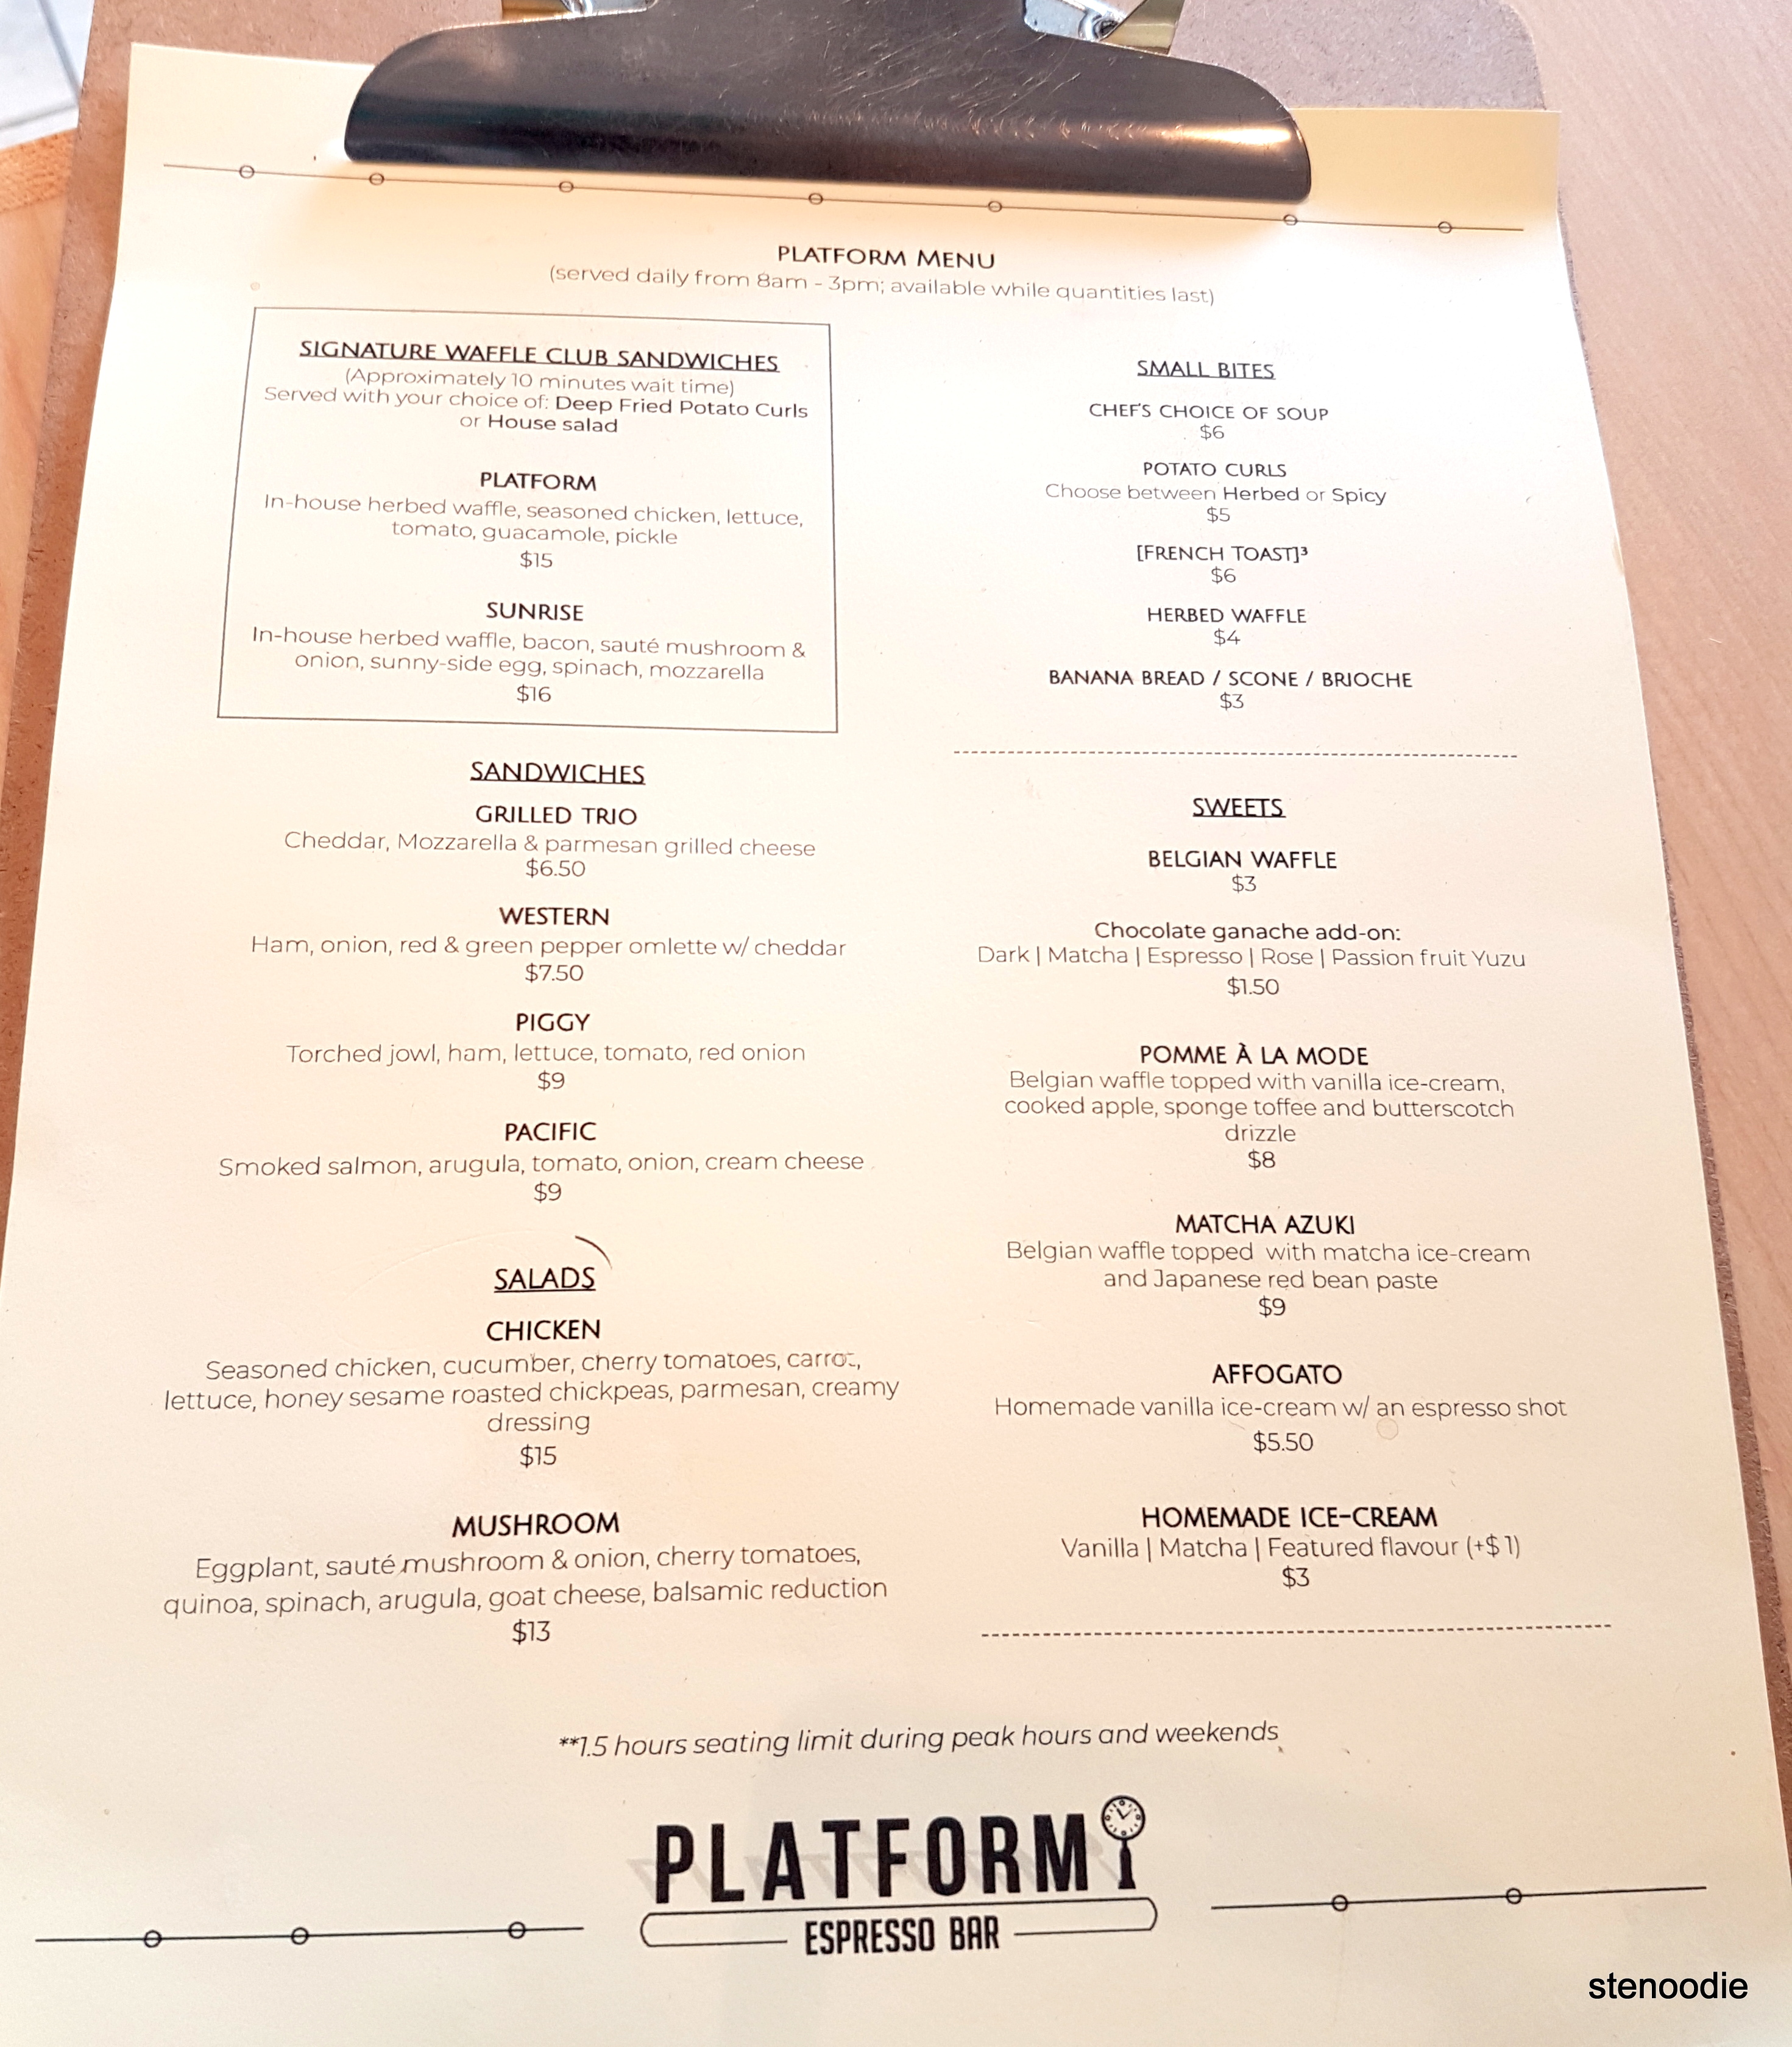 Platform Espresso Bar food menu and prices